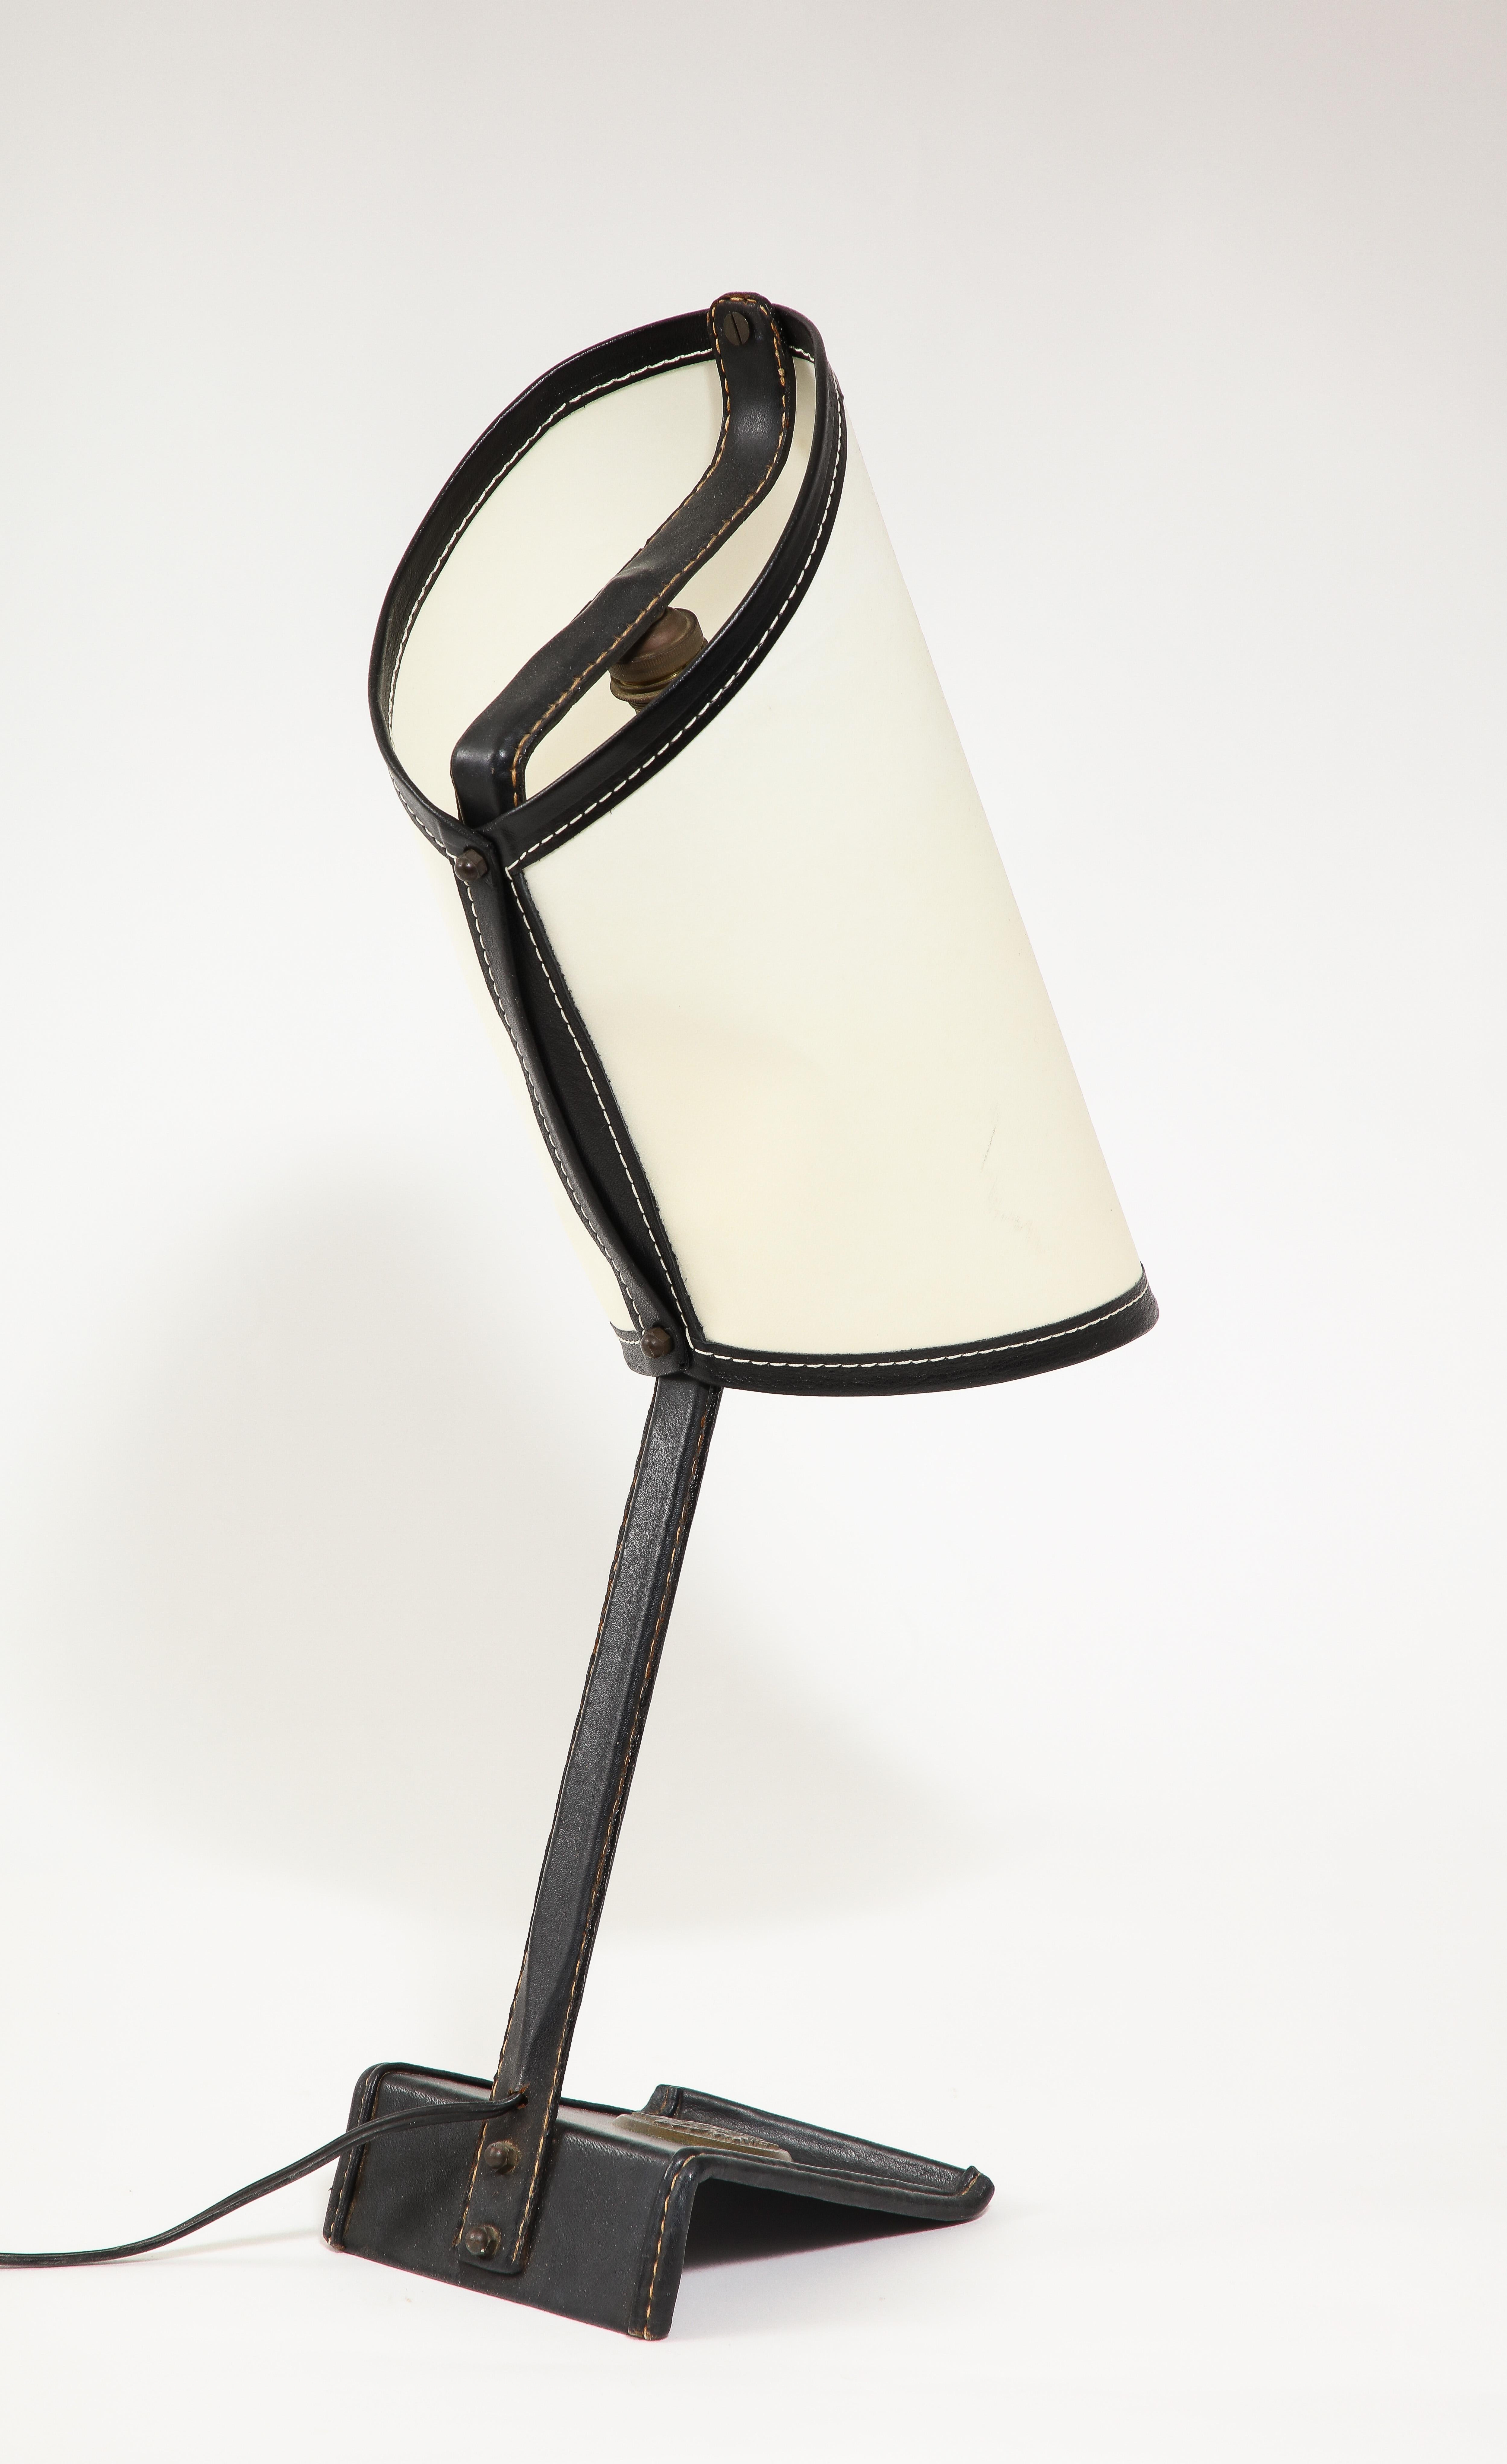 Schreibtischlampe, die von Jacques Adnet für verschiedene Botschaften hergestellt wurde. Diese Lampe trägt ein Bronzemedaillon, das sie als von der kanadischen Botschaft stammend ausweist.
Genähtes Leder und pergamentfarbener Schirm. Eine seltene